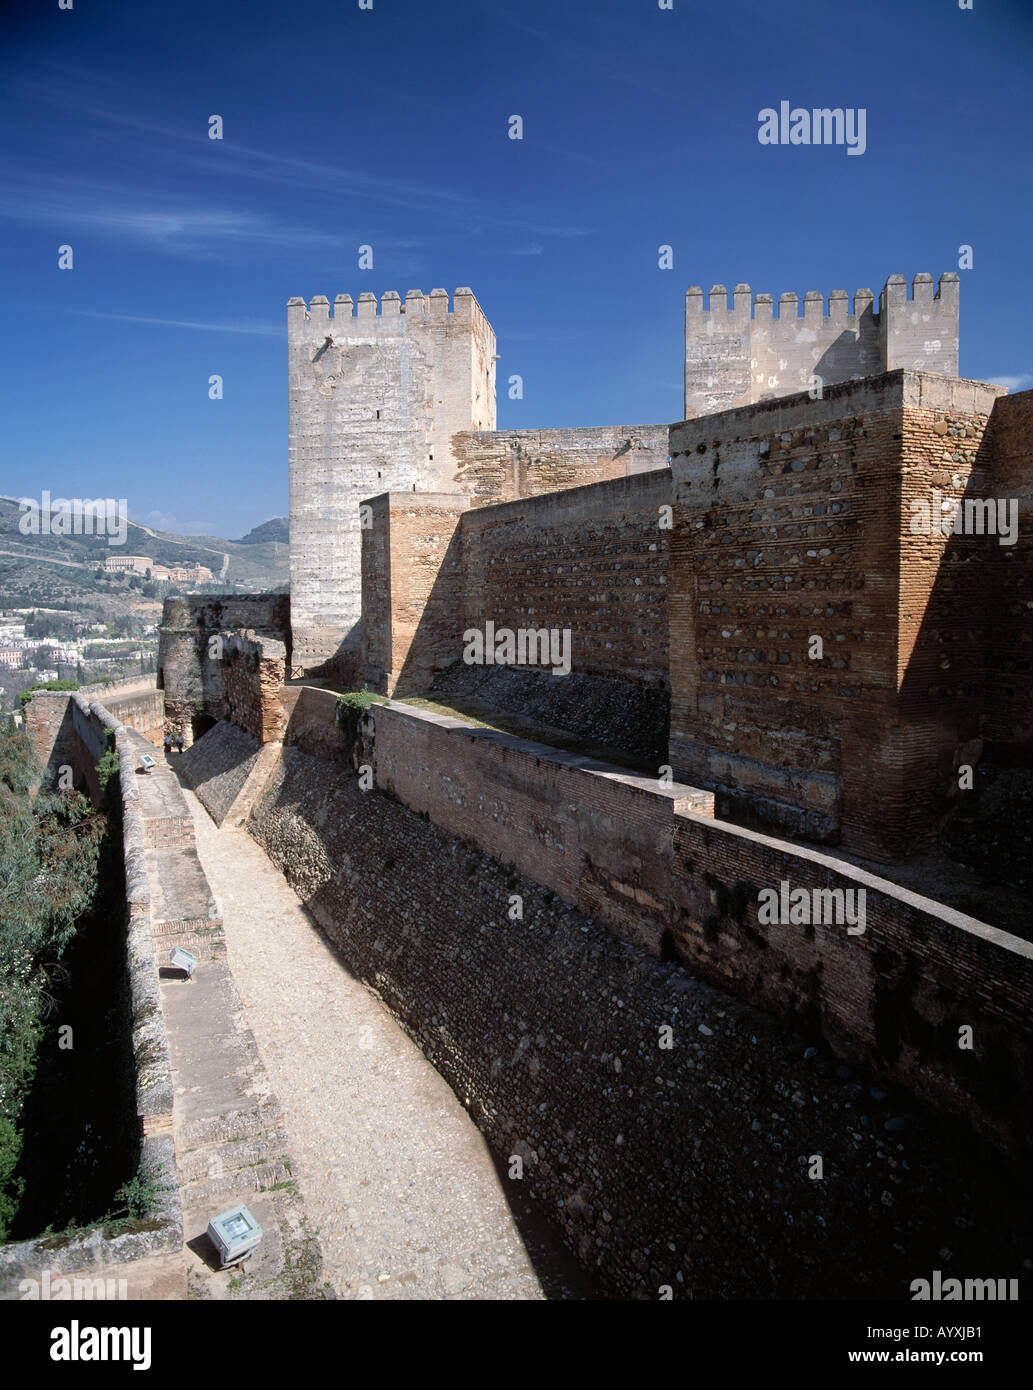 Alhambra, Festung, Festungsmauern, Burgtuerme mit Zinnen, Granada, Andalusien Stock Photo